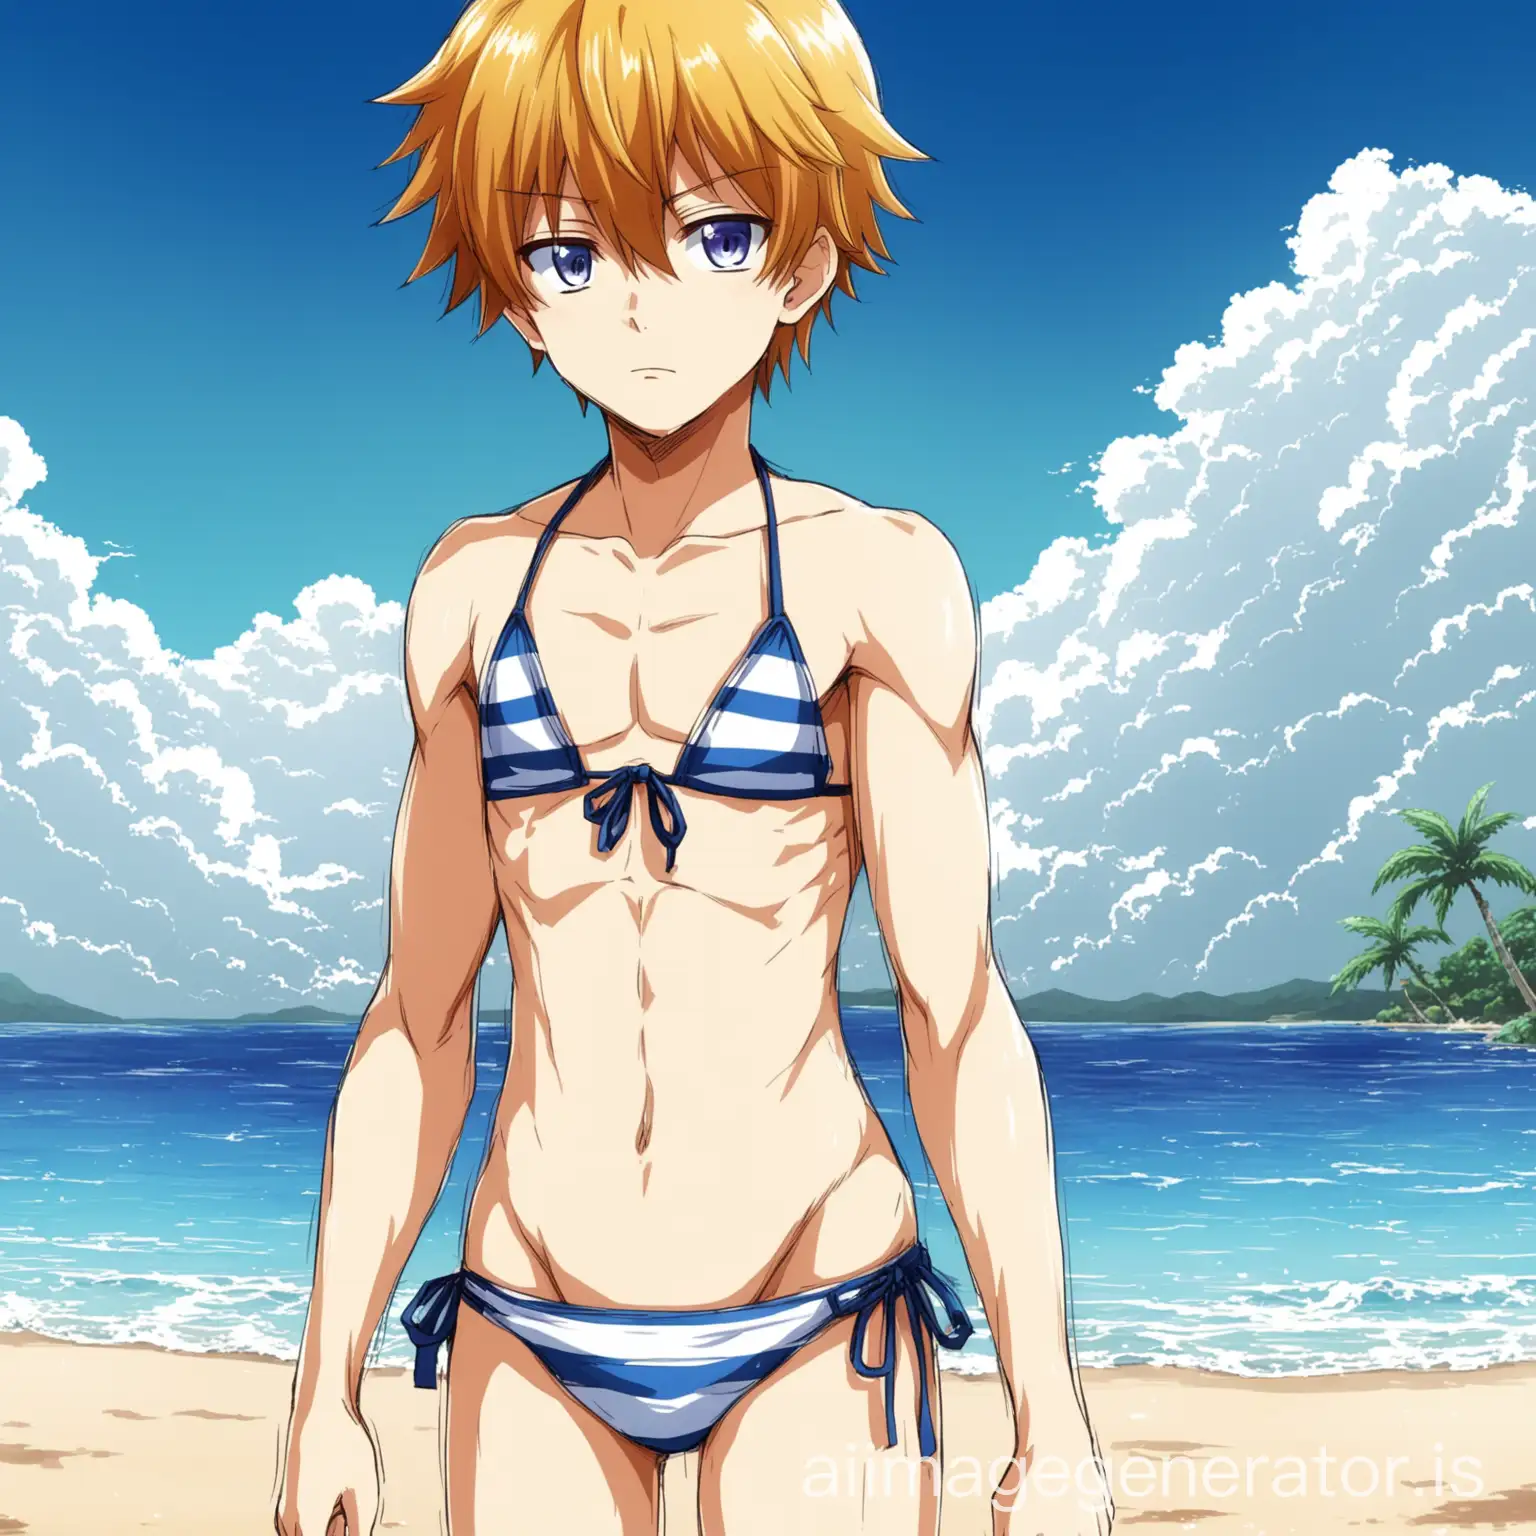 Adorable-Anime-Boy-Relaxing-in-Bikini-at-the-Beach